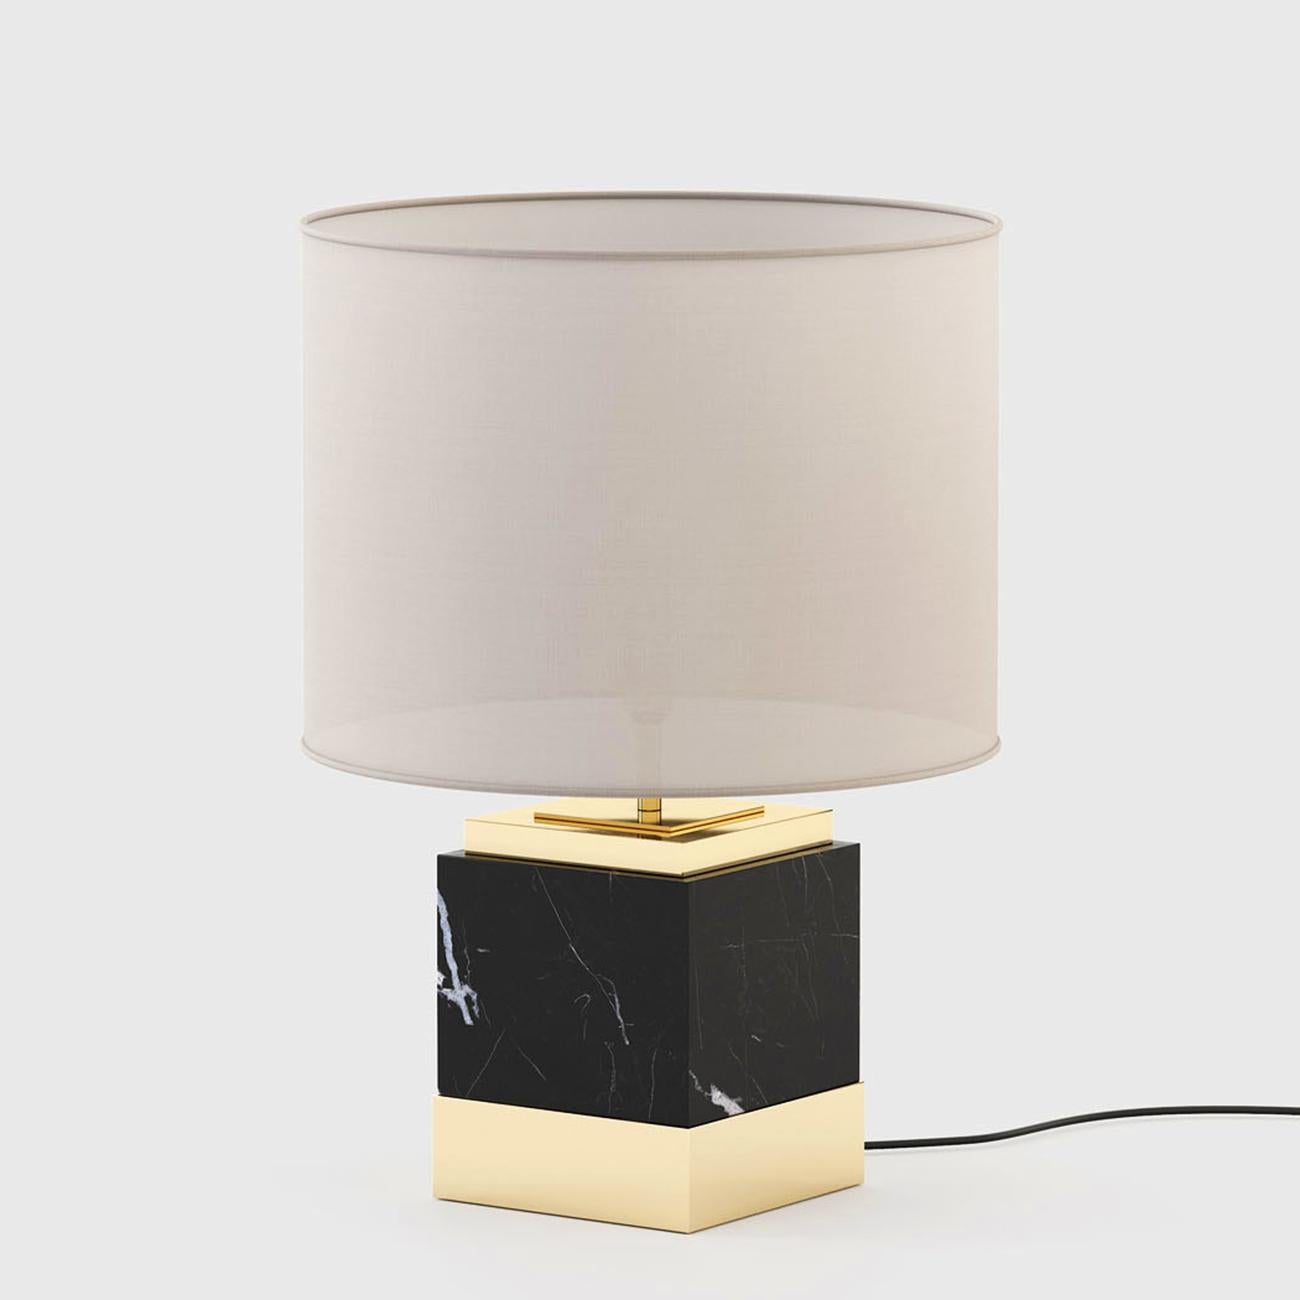 Lampe de table Rocks avec base en marbre noir
avec de l'acier inoxydable poli en finition dorée,
incluant un abat-jour en coton blanc. Avec 1 ampoule,
support de lampe type E27, max 40 watt, ampoule non fournie 
inclus. Également disponible en